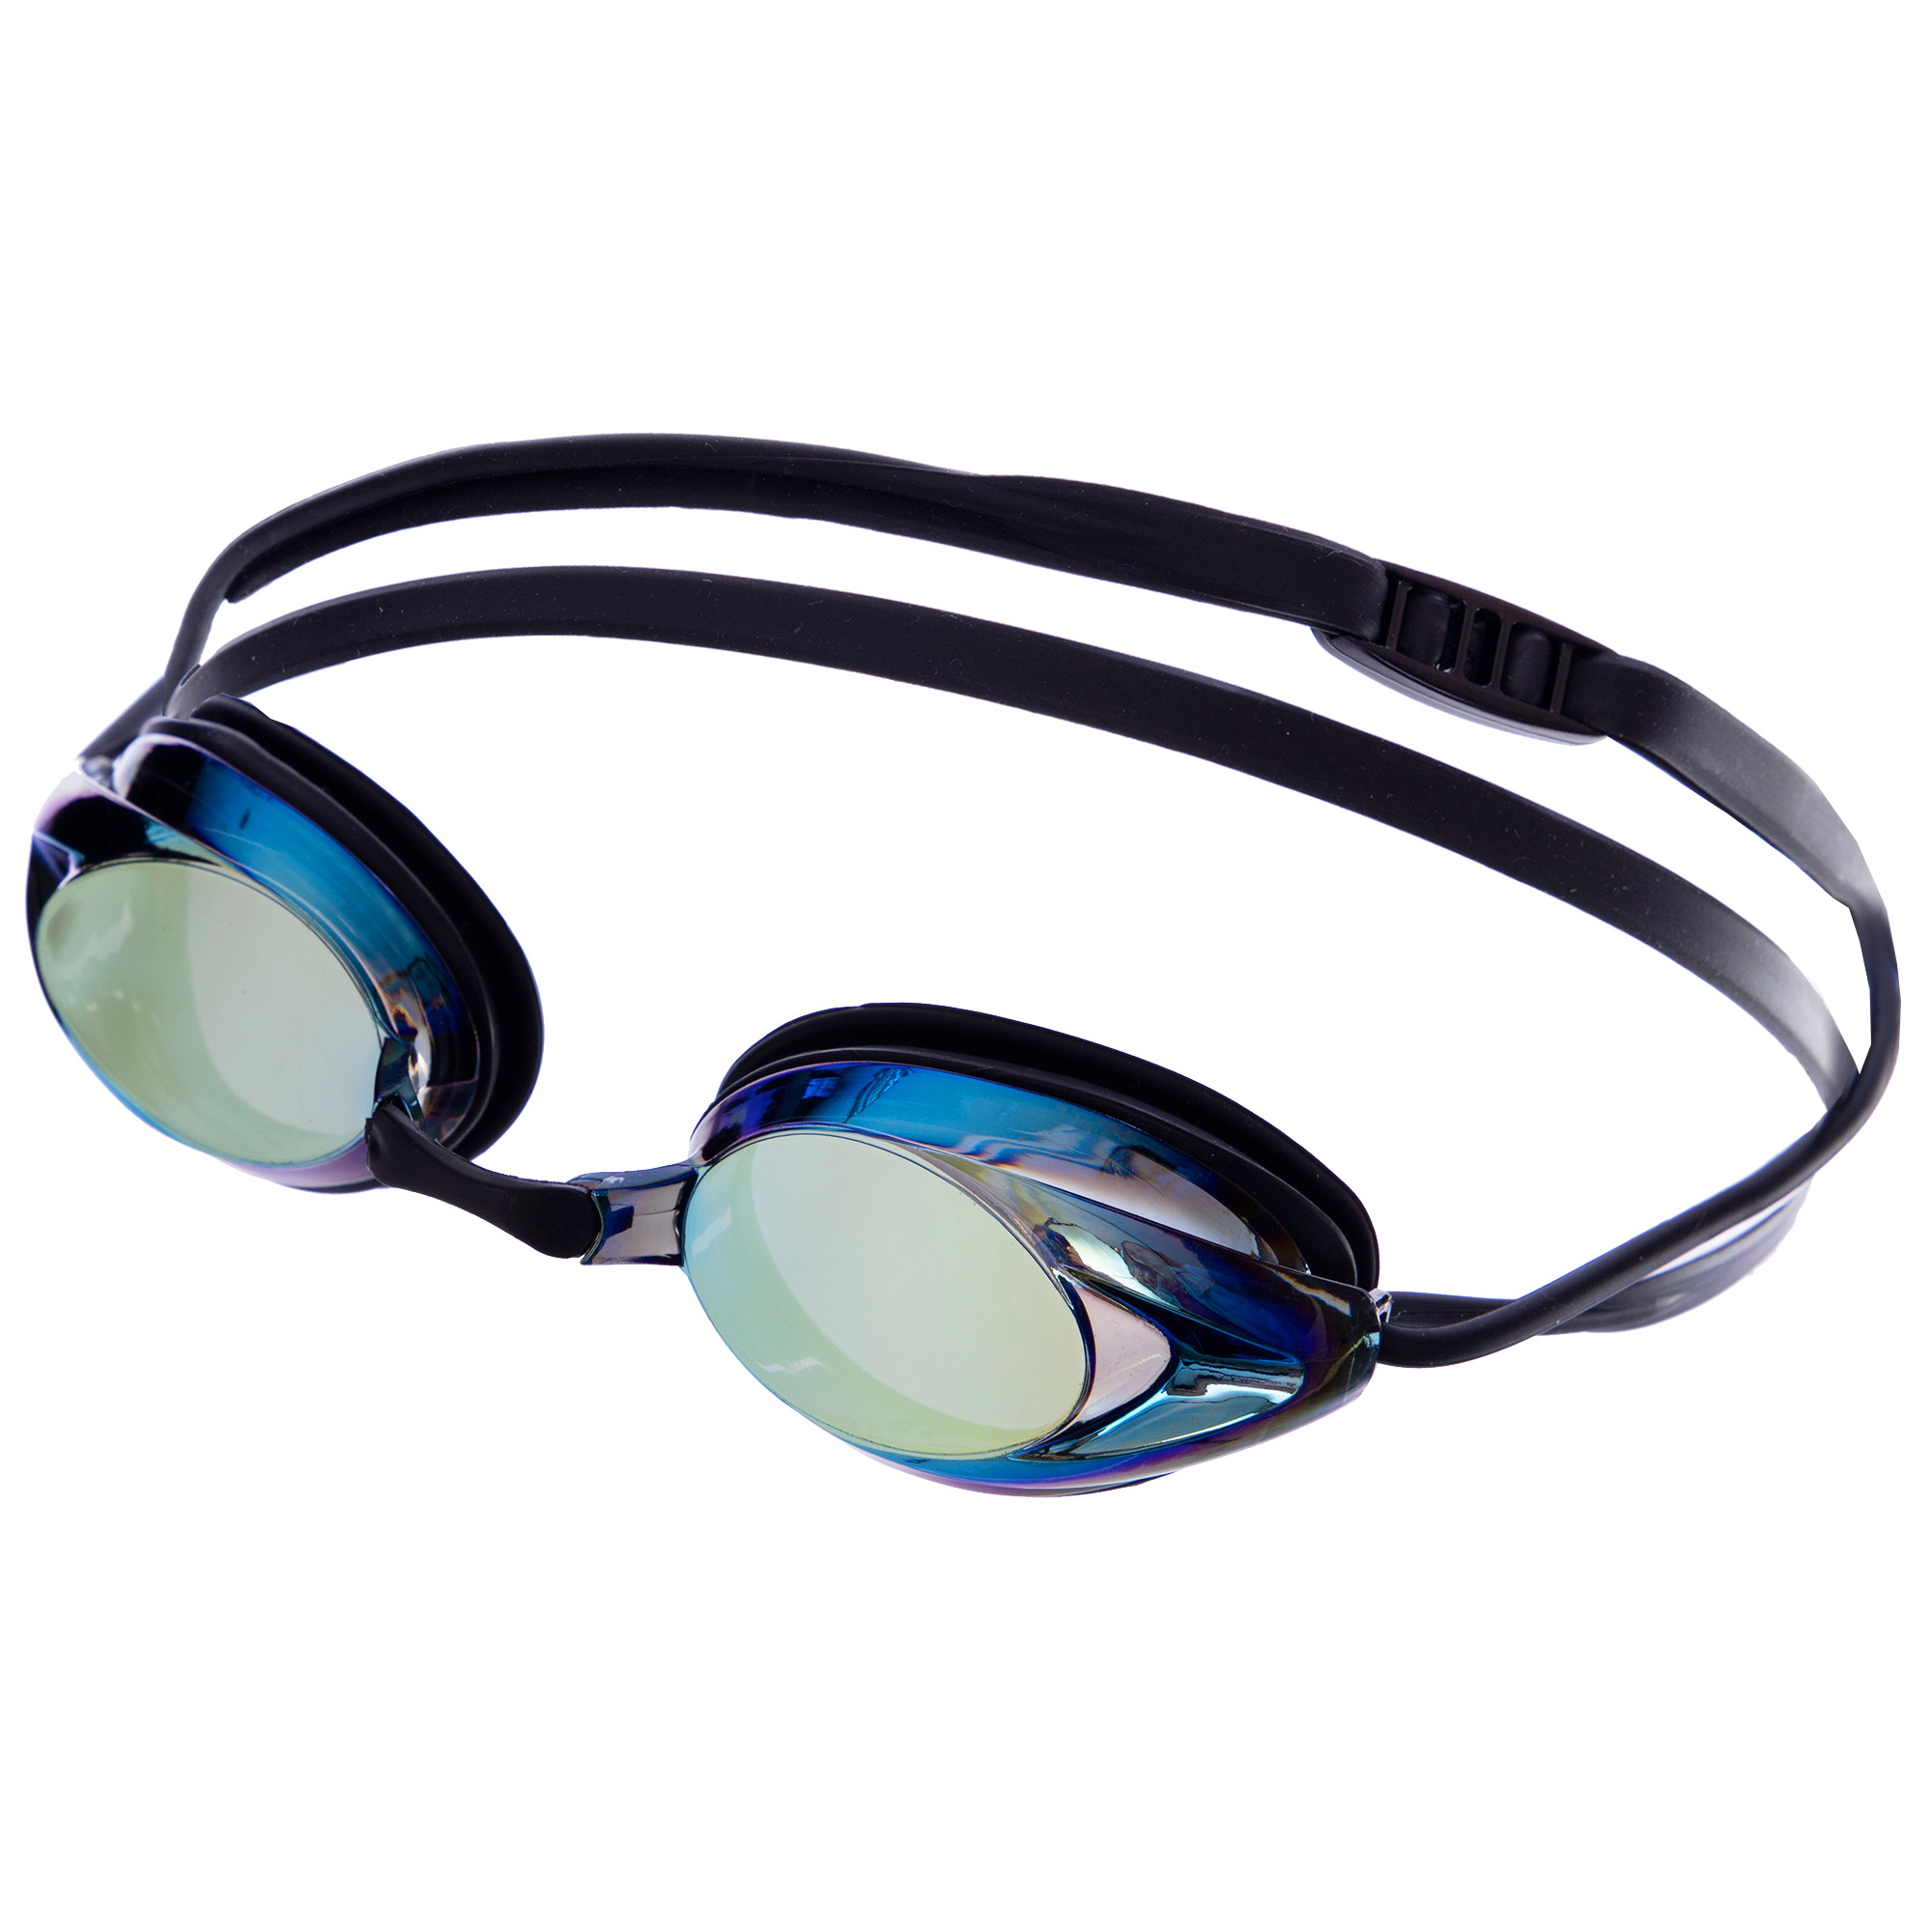 Очки для плавания с берушами в комплекте SAILTO 807AF Черный хамелеон